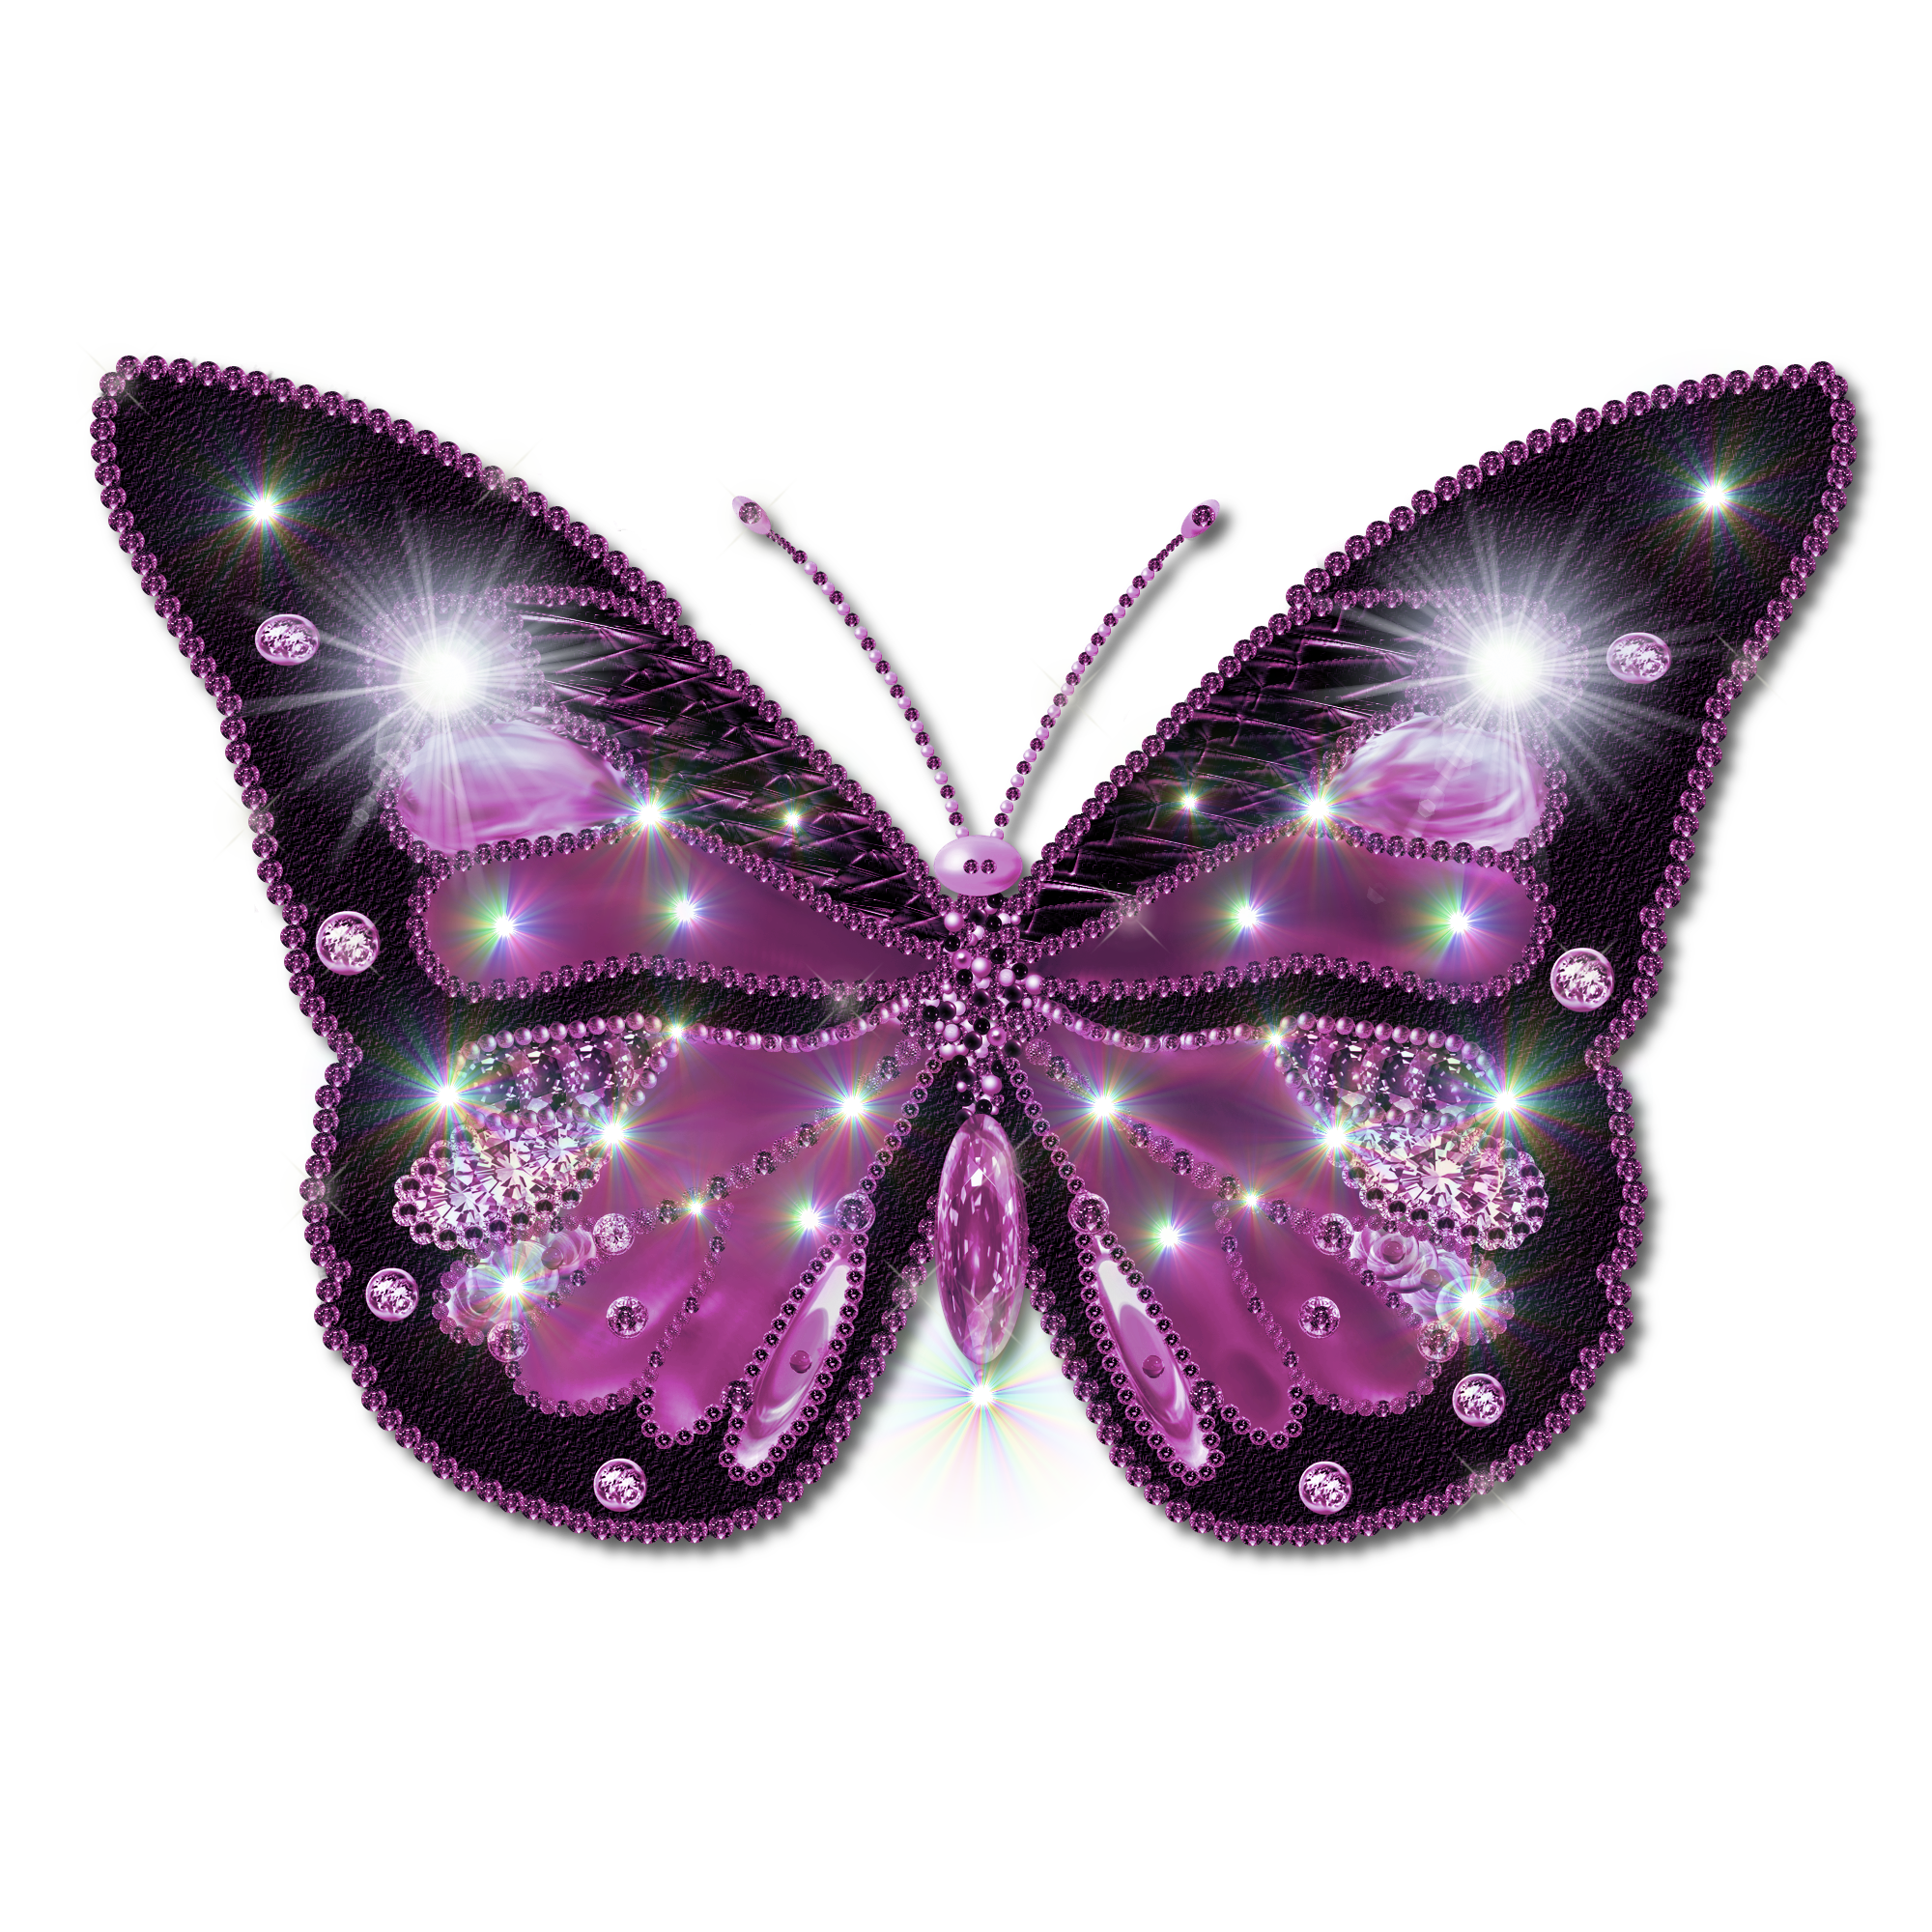 Изображения в формате gif. Красивые бабочки на прозрачном фоне. Бабочка рисунок на прозрачном фоне. Фиолетовые бабочки на прозрачном фоне. Бабочки для фотошопа.